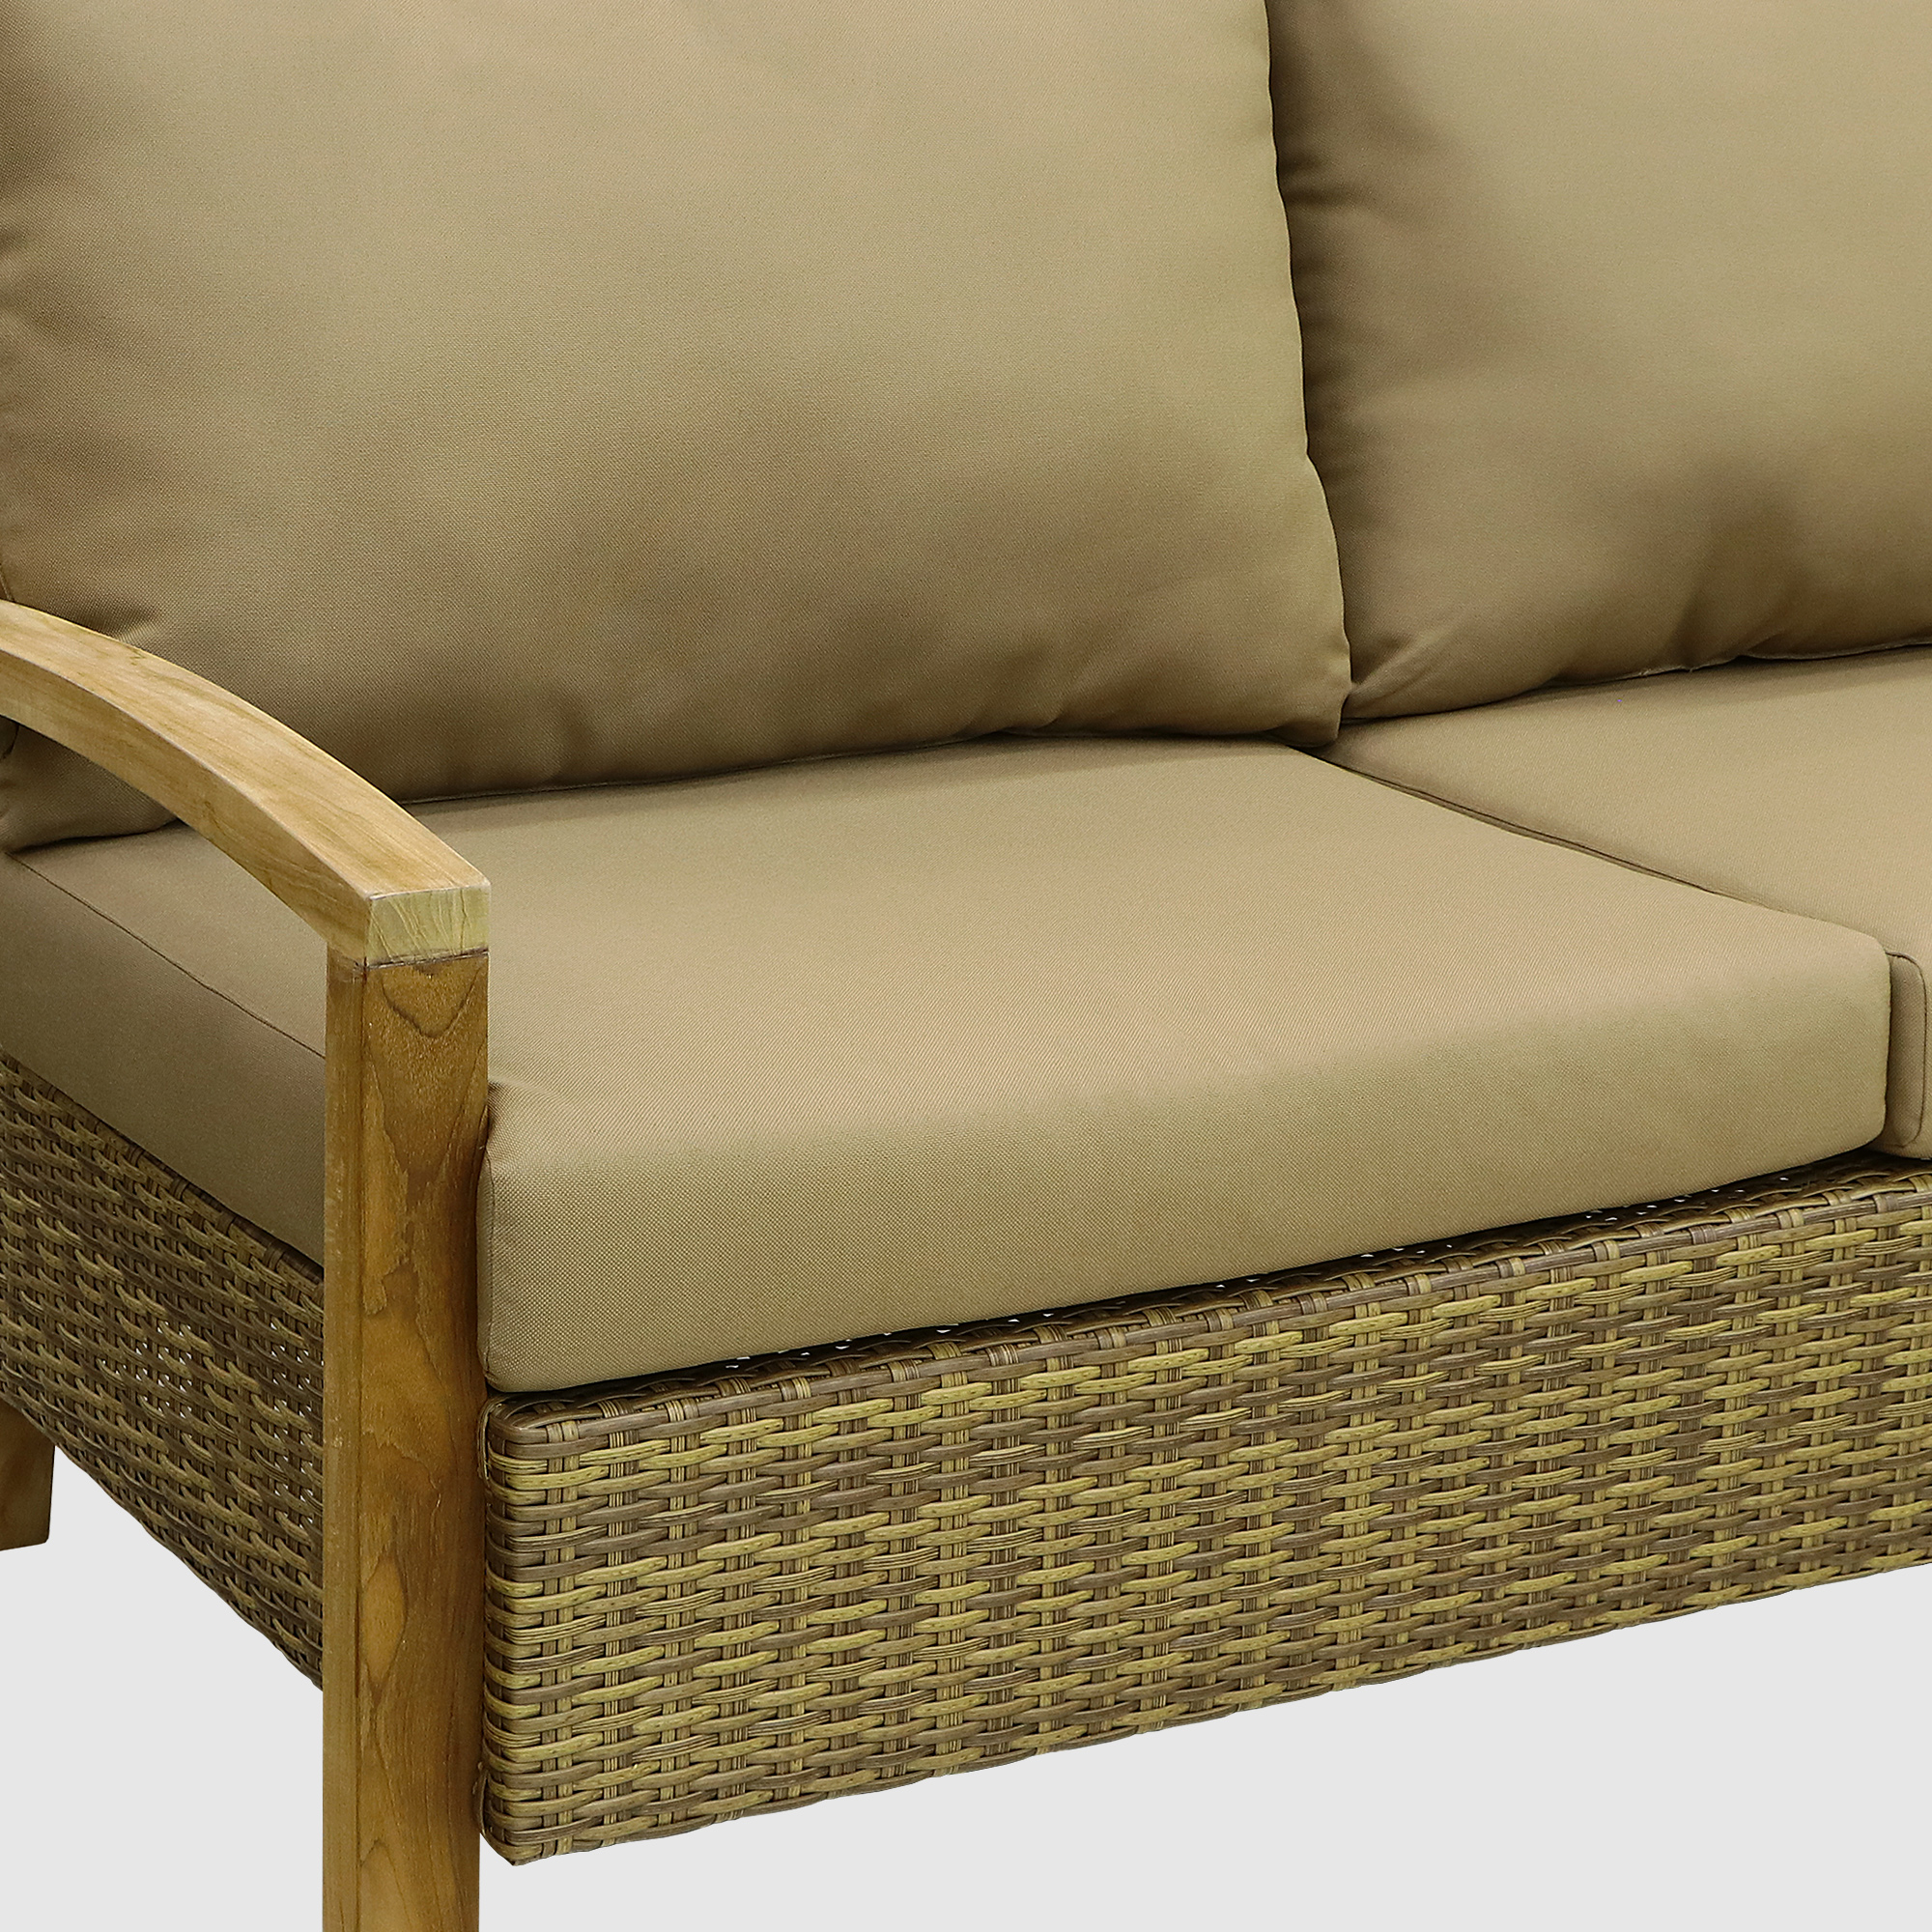 Комплект мебели Jepara Bastian 5 предметов, цвет светло-коричневый, размер 240х88х125 - фото 10